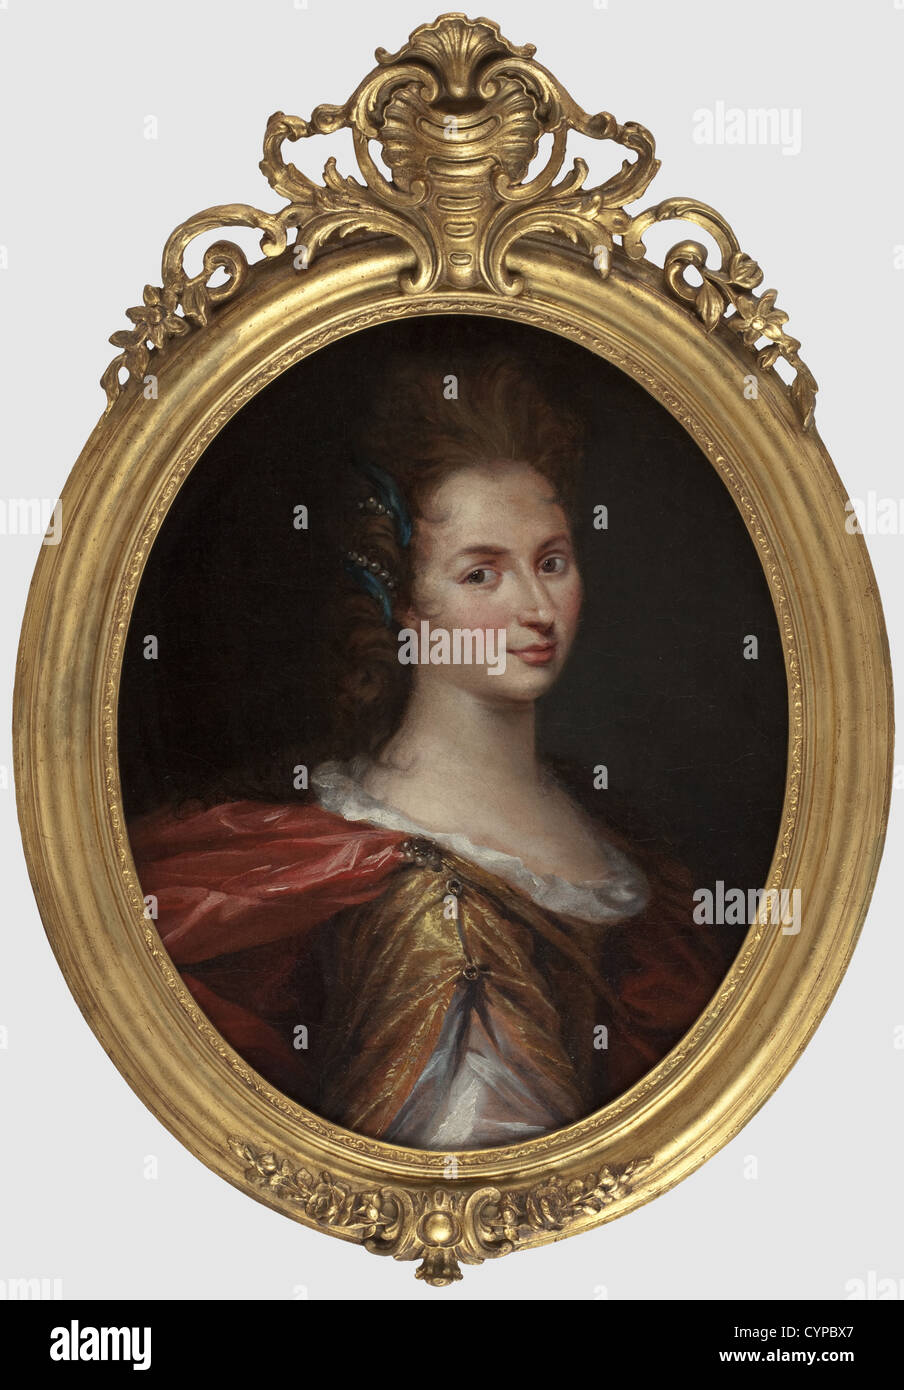 Eine barocke Porträt einer edlen Dame, wahrscheinlich Frankreich, 1. Hälfte des 18. Jahrhunderts Öl auf Leinwand (UNTERFÜTTERT), nicht unterzeichnet, auf einem späteren Keilrahmen. Profil Porträt einer Dame mit Lose frisierten Haare, blaue Haare und Band Pearl Schmuck. Der goldfarbene Kleid mit einer Spaltung, die Naht ist mit Tüll. In einem vergoldeten und geschnitzten Rahmen (teilweise restauriert). Abmessungen der Malerei 70 x57 cm, Abmessungen der Rahmen 90 x 63,5 cm. Schöne Arbeit, angeblich zeigt es eine Tochter oder Enkelin der französische Sonnenkönig Ludwig XIV, bildende Kunst, Menschen, 18 centu, Artist's Urheberrecht nicht geklärt zu werden. Stockfoto